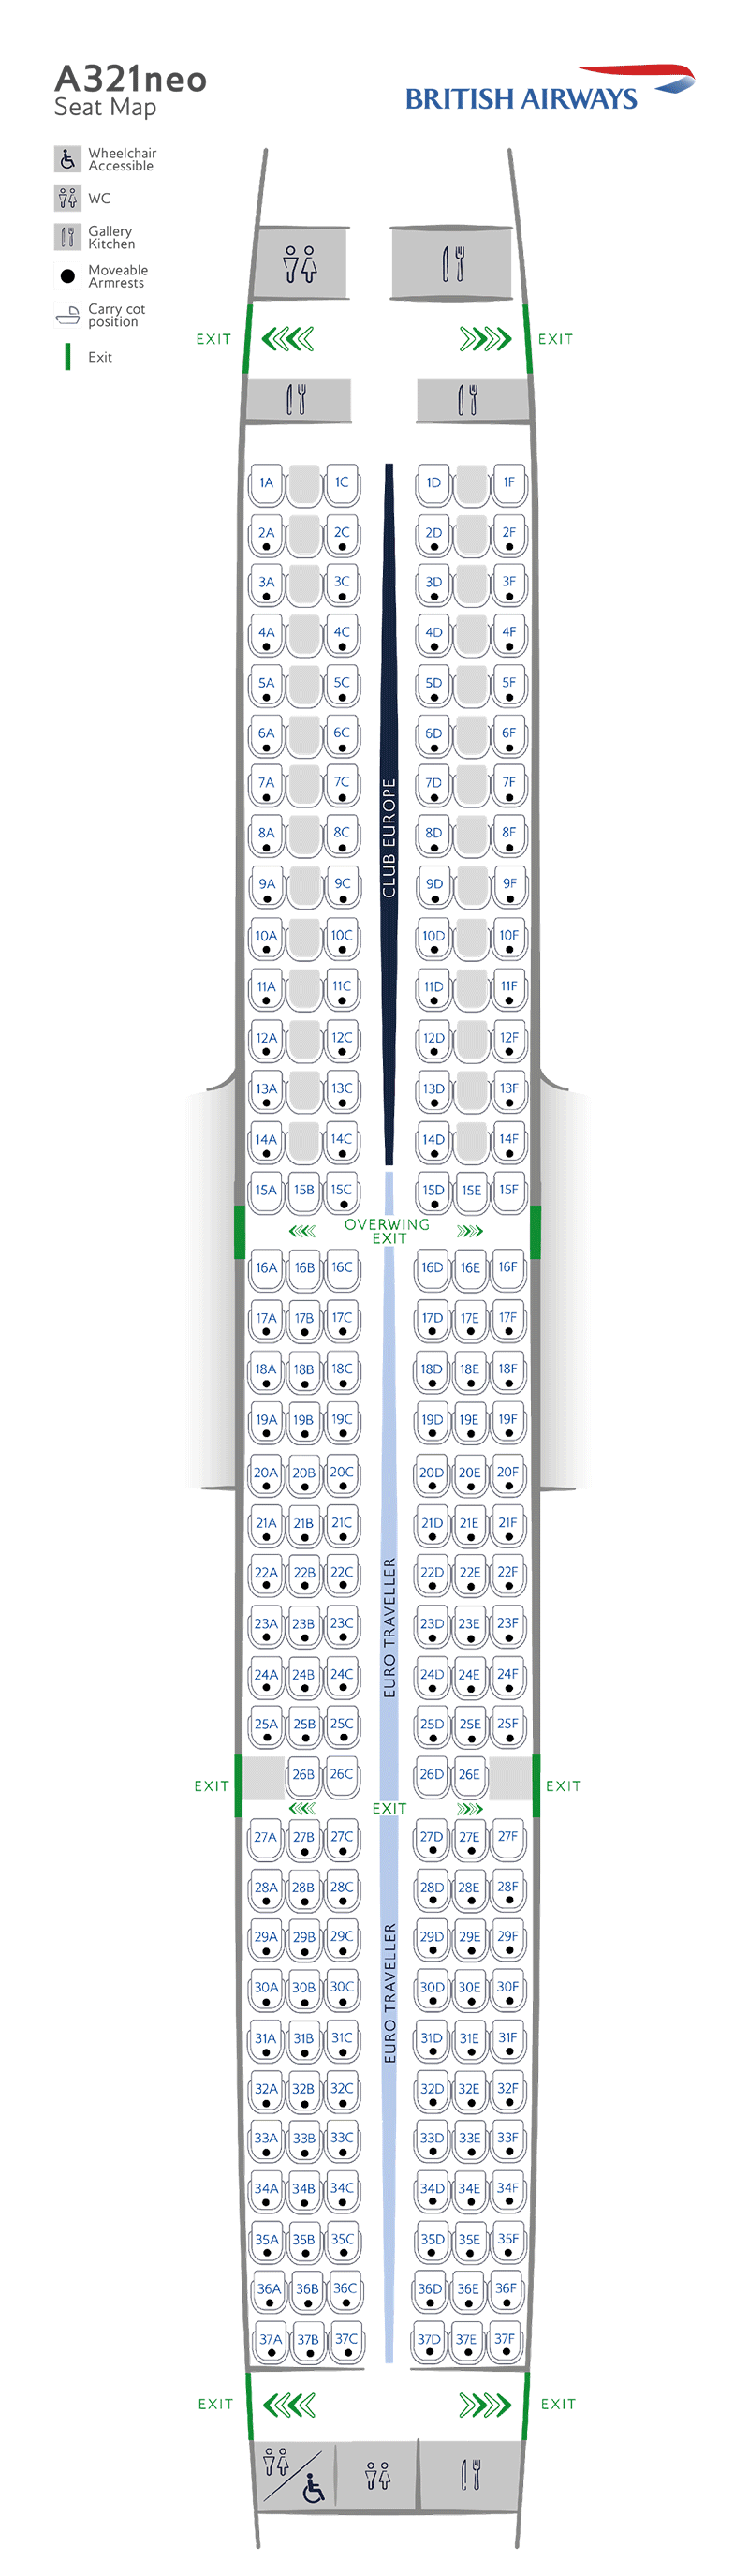 Mapa de asientos del A321neo